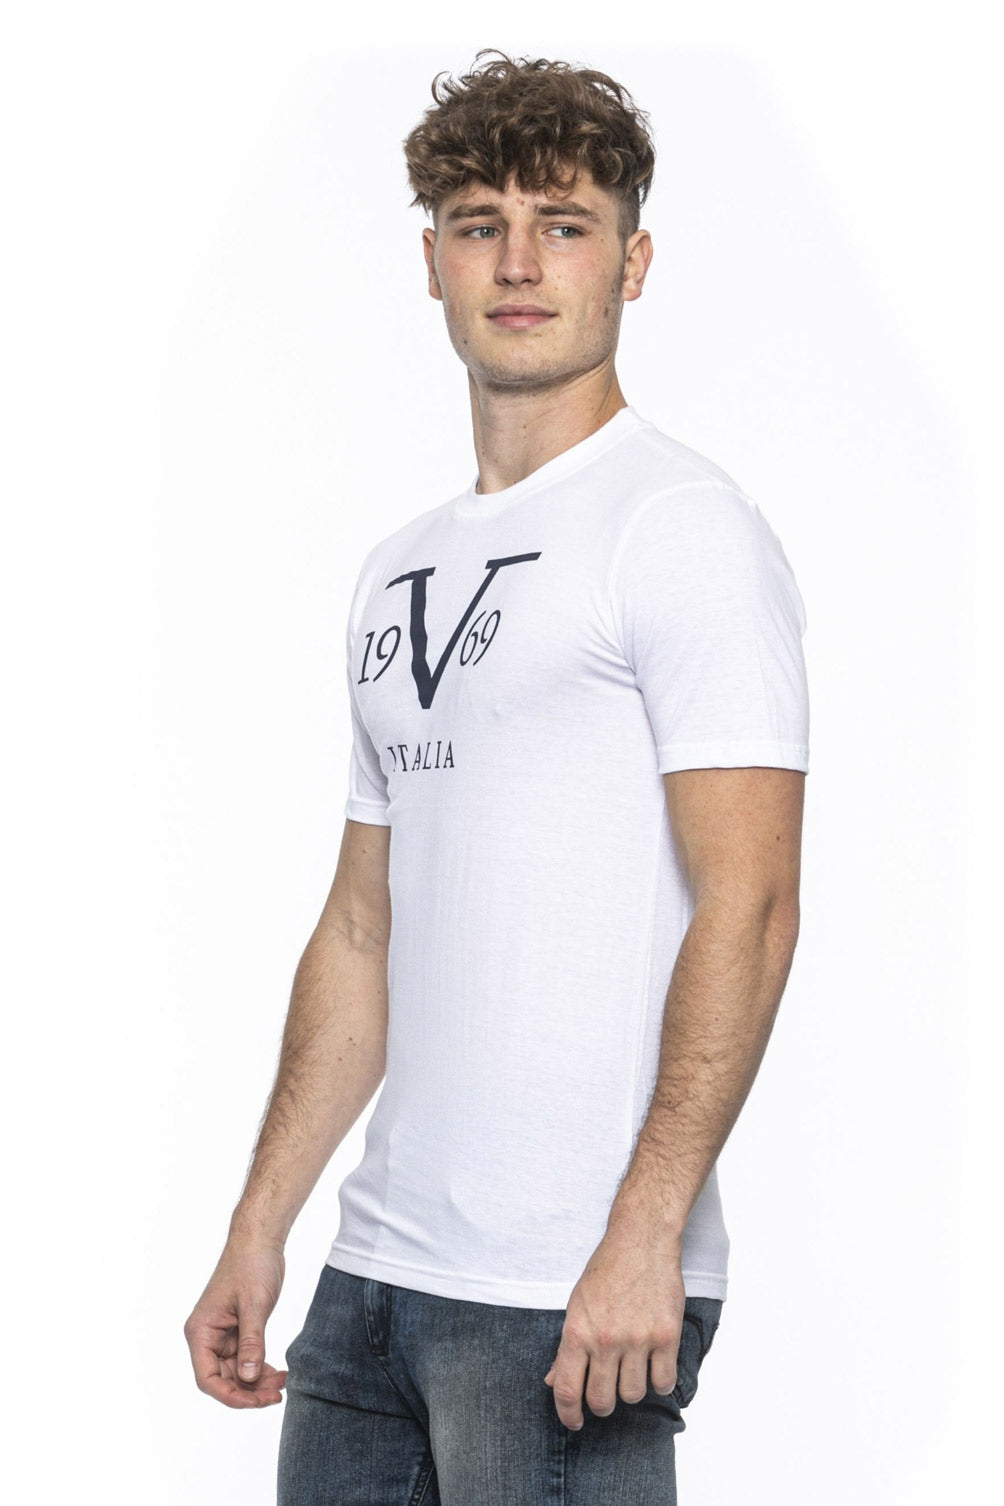 19V69 Italia Mens T-Shirt White RAYAN WHITE